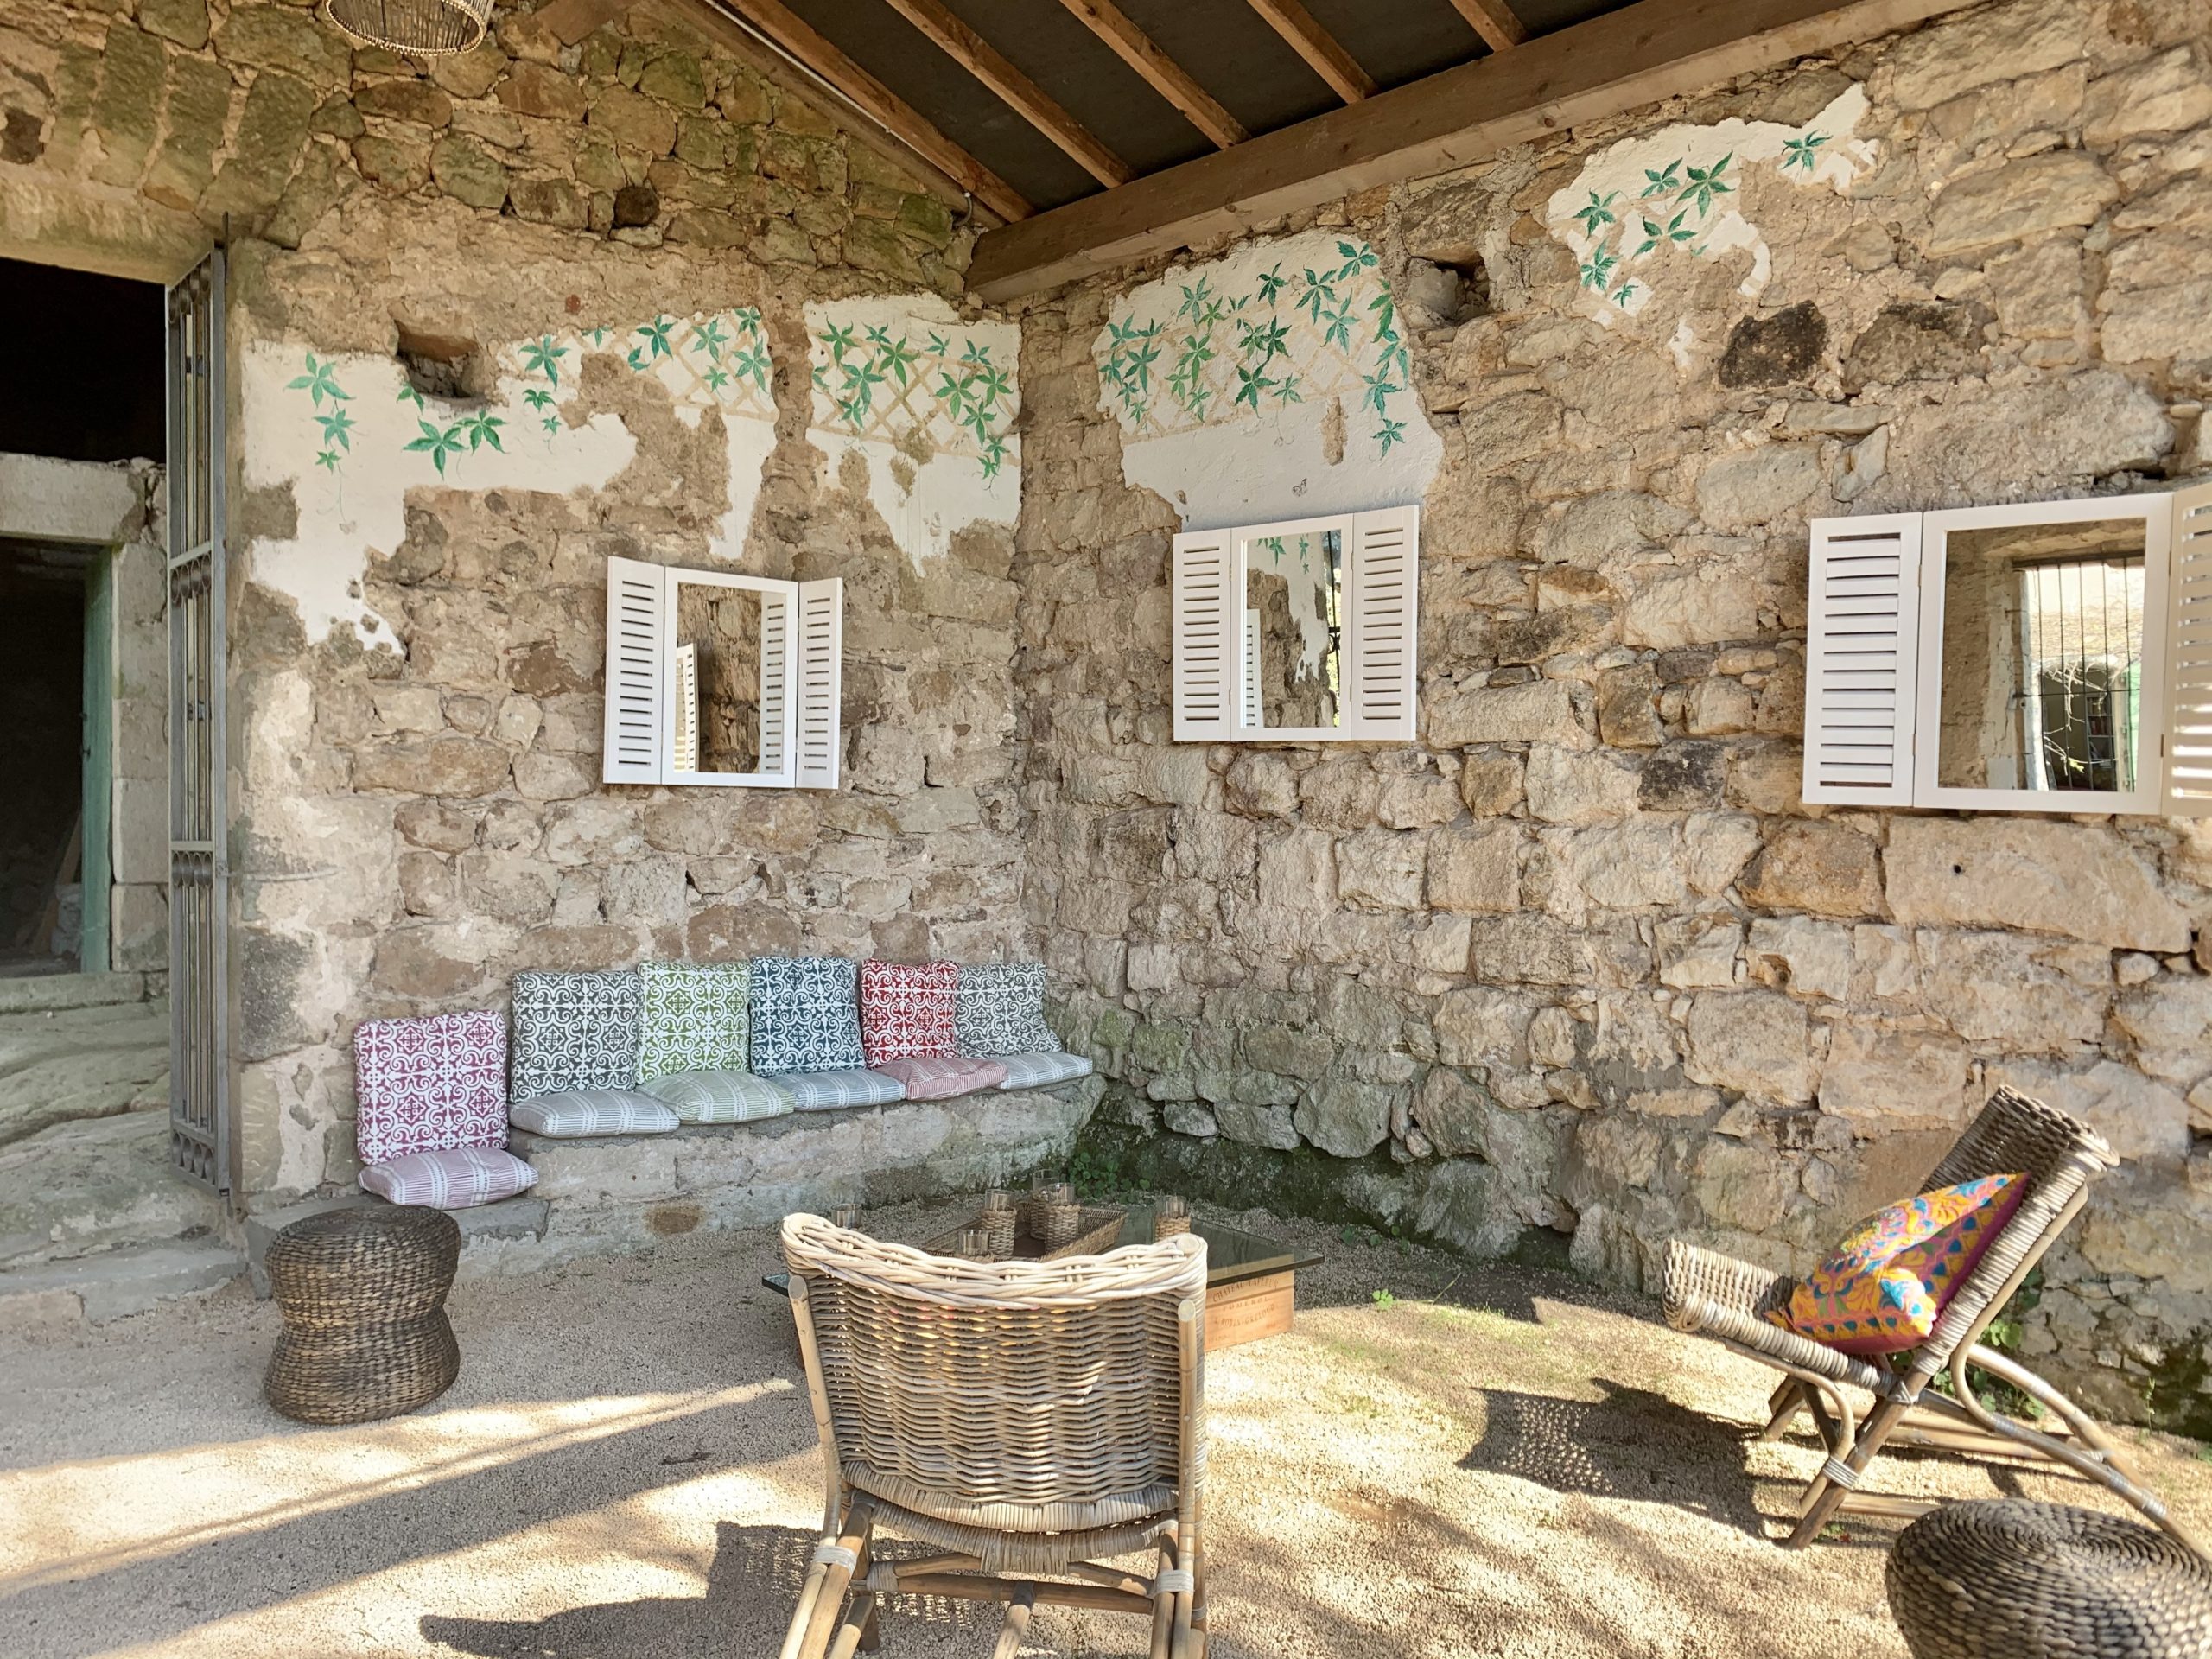 Chambres et table d'hôte en Ardèche. Parc régional des Monts d'ardèche, Largentière, Vallon Pont d'arc, Vogue